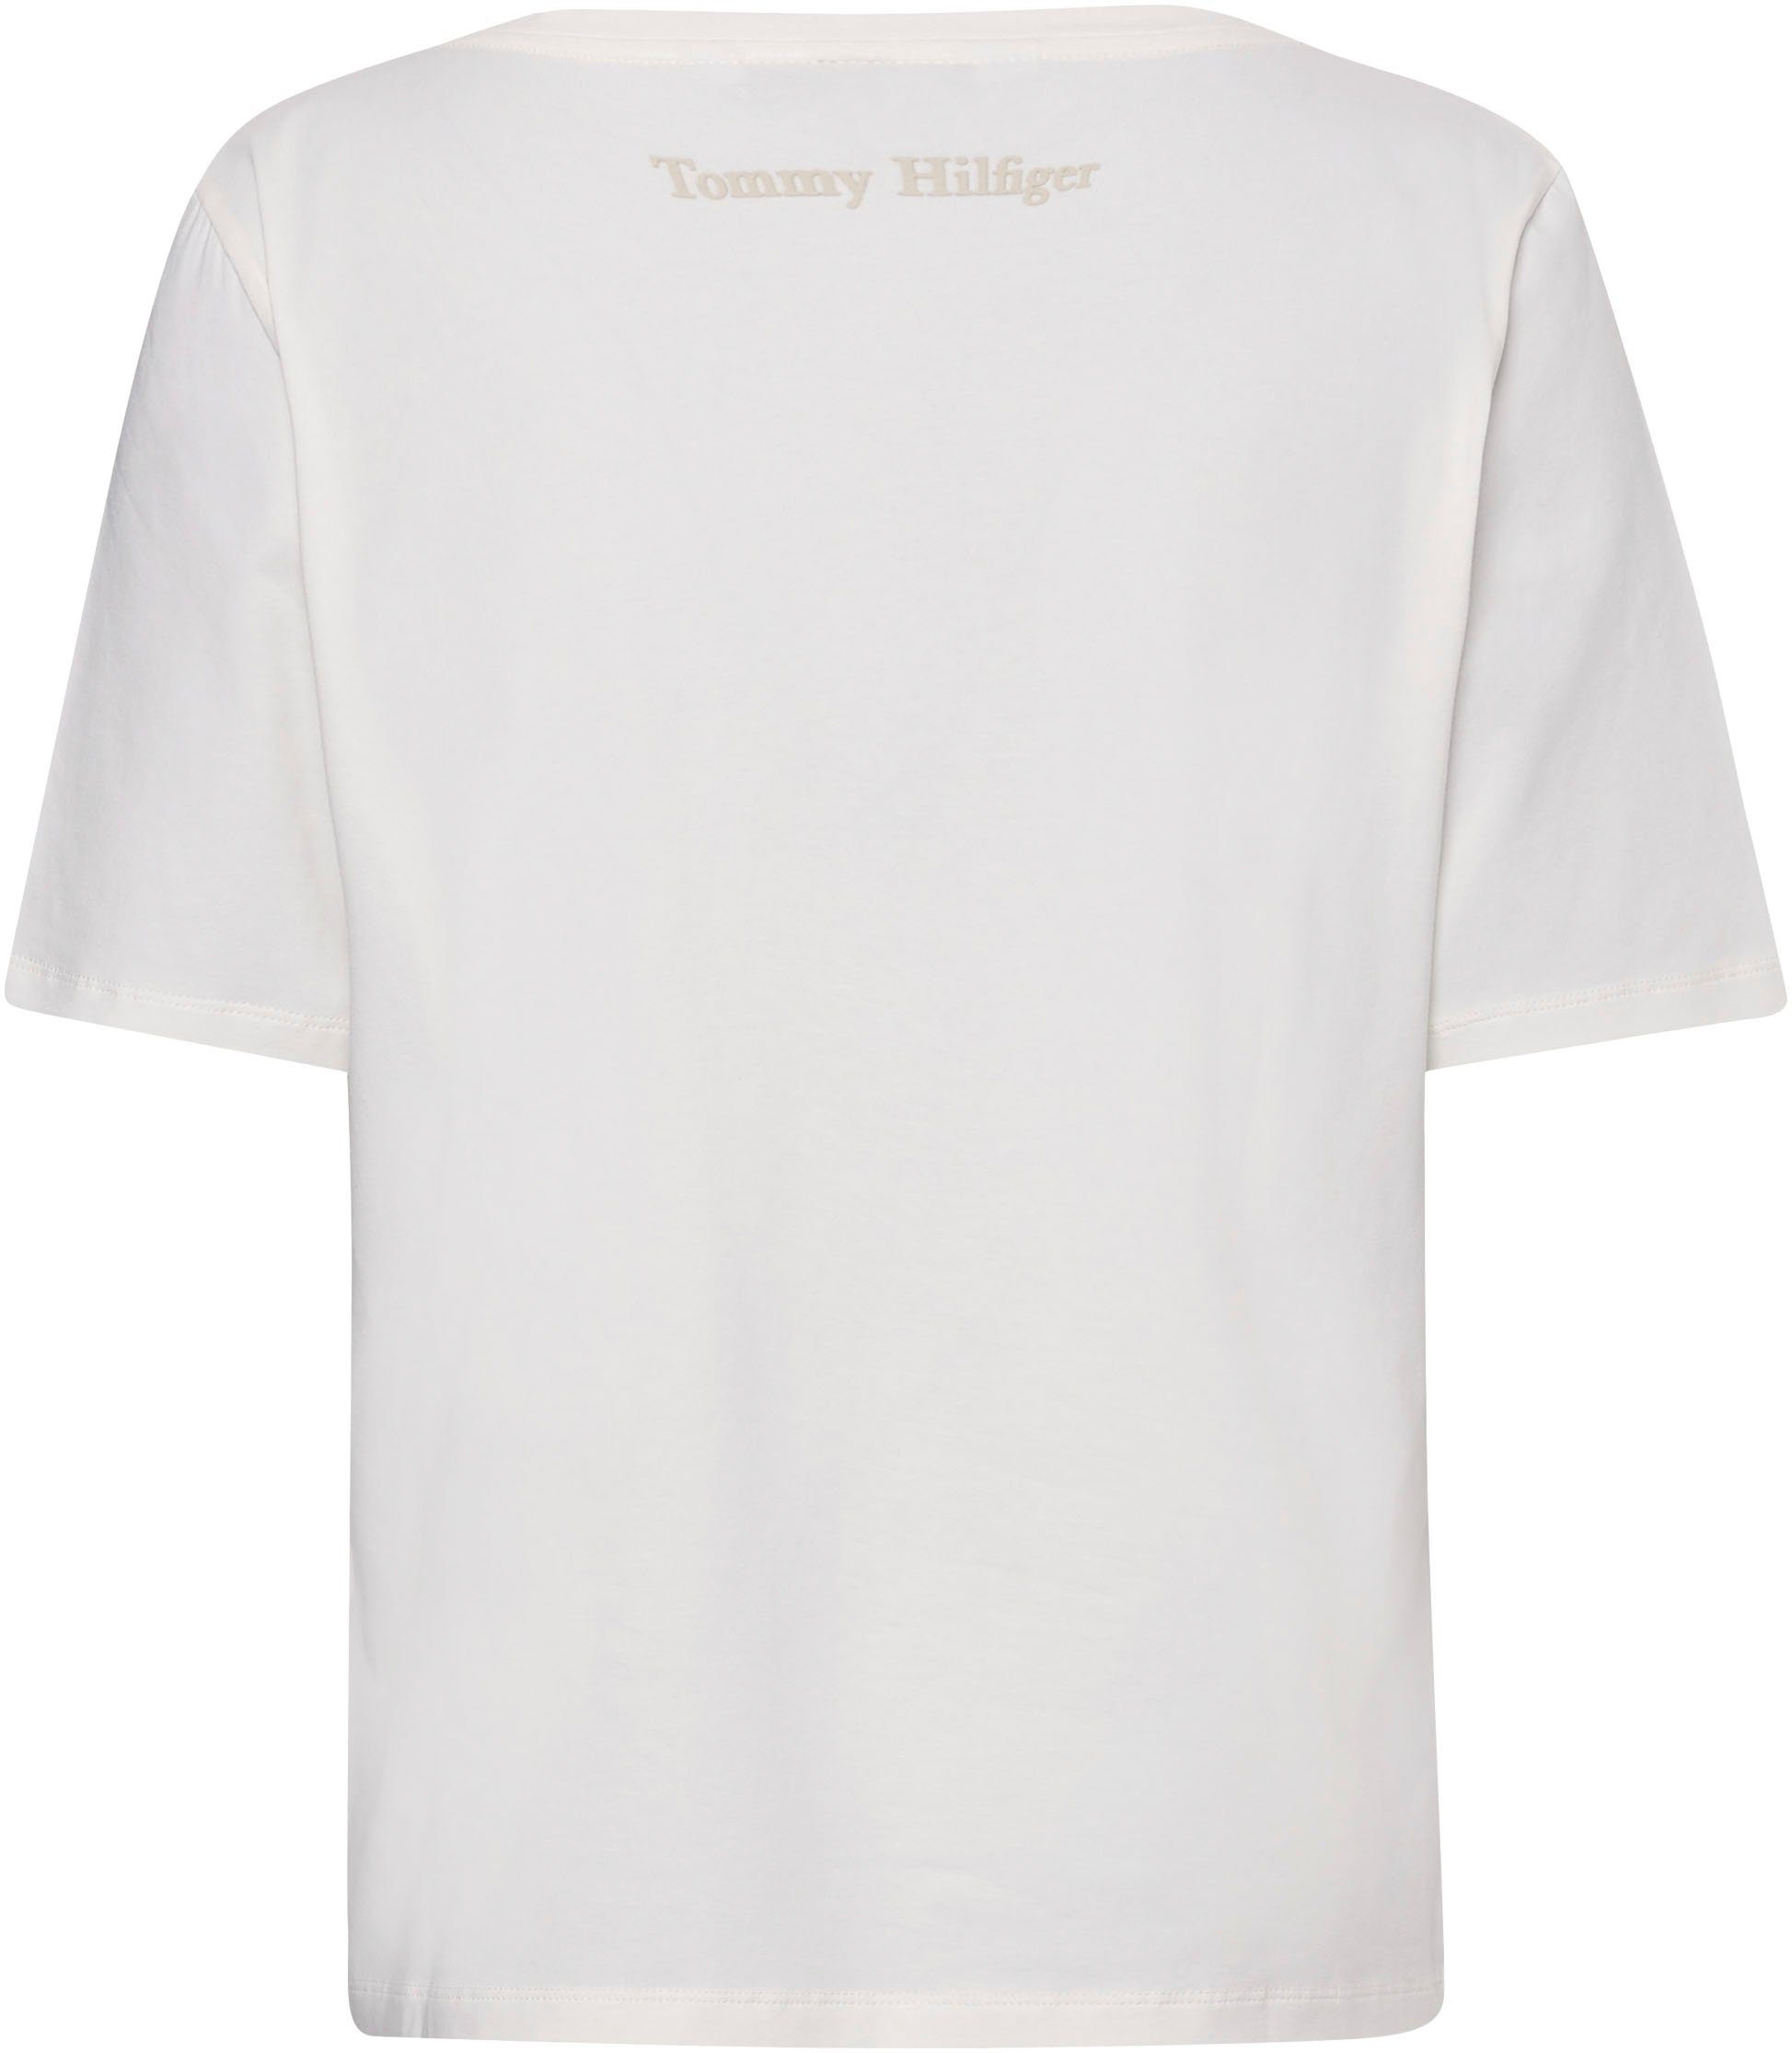 T-Shirt mit Hilfiger Markenlabel ecru Tommy